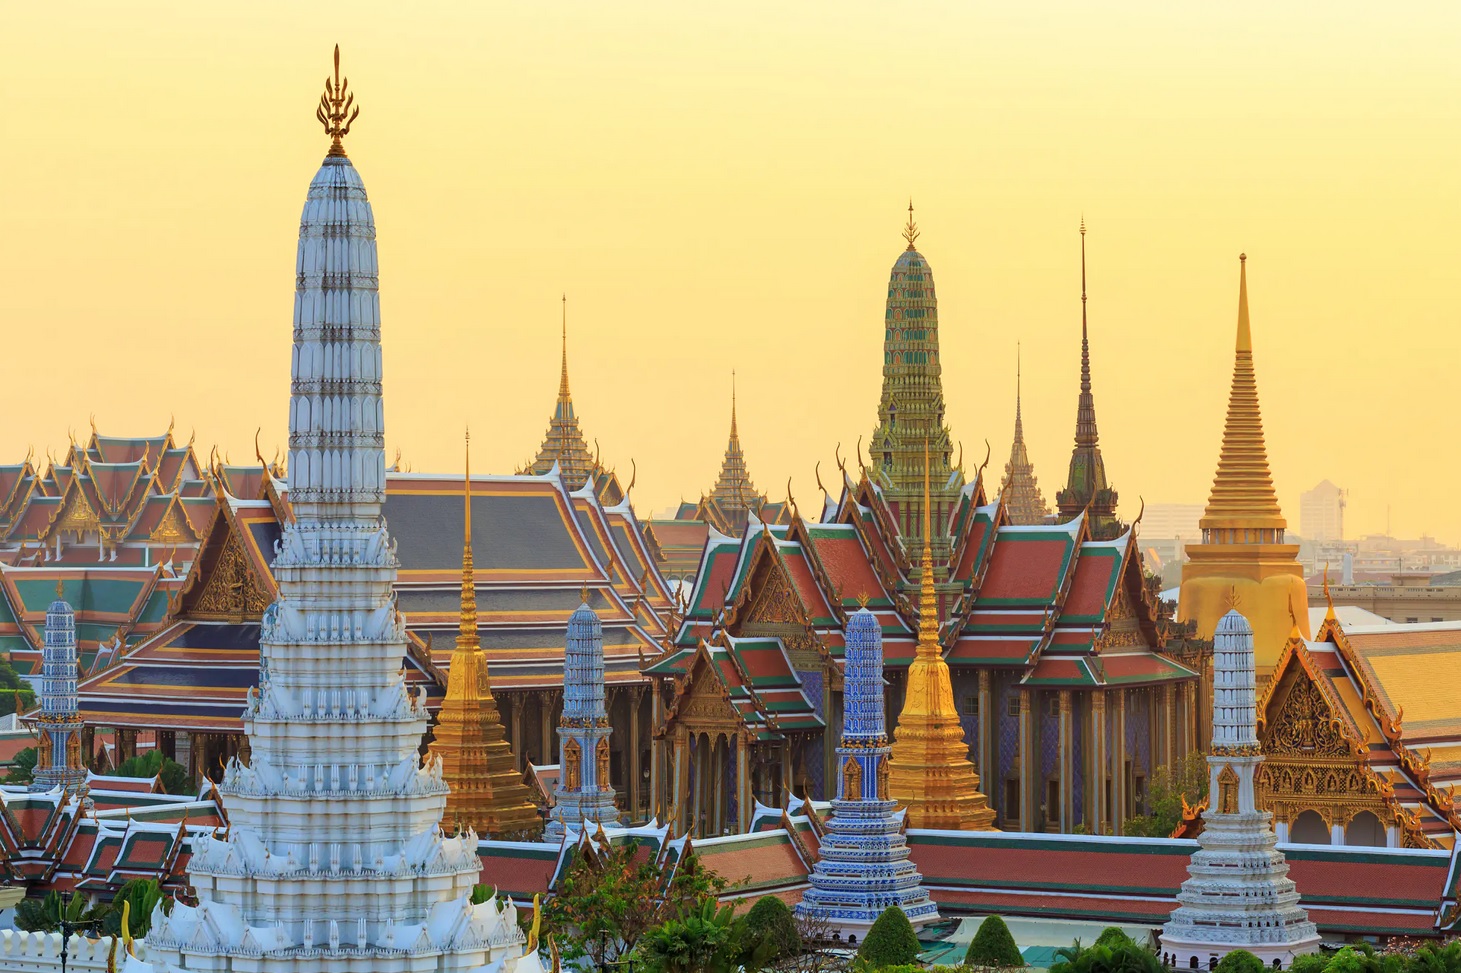 https://mrlinhadventure.com/fr/destinations-en-thaïlande/centre-de-la-thaïlande/central-thailand-overview.aspx